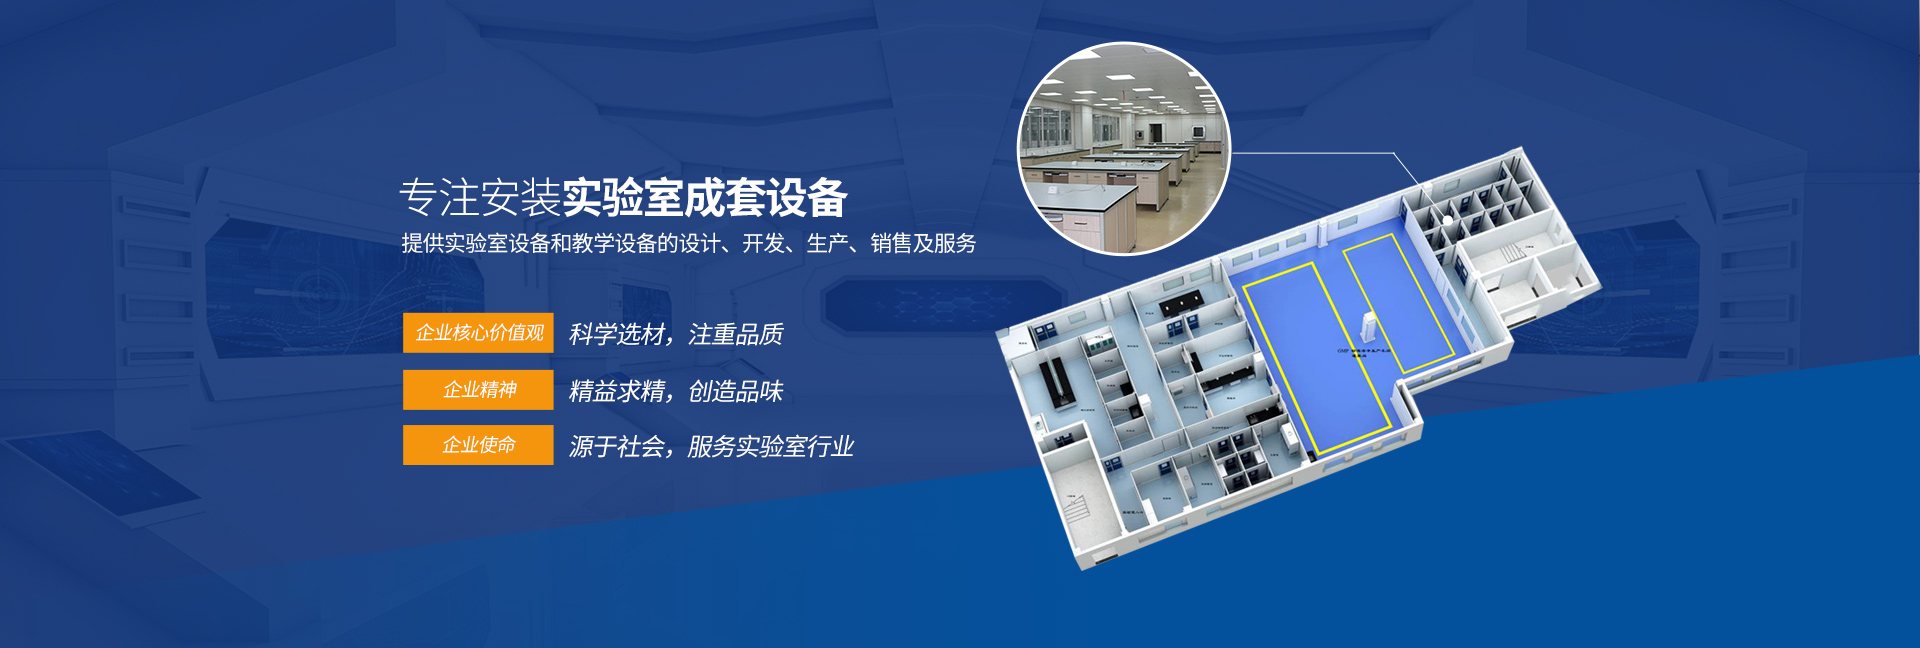 湖南省乘大制造有限公司_株洲實驗室成套設備安裝_教學儀器設備安裝